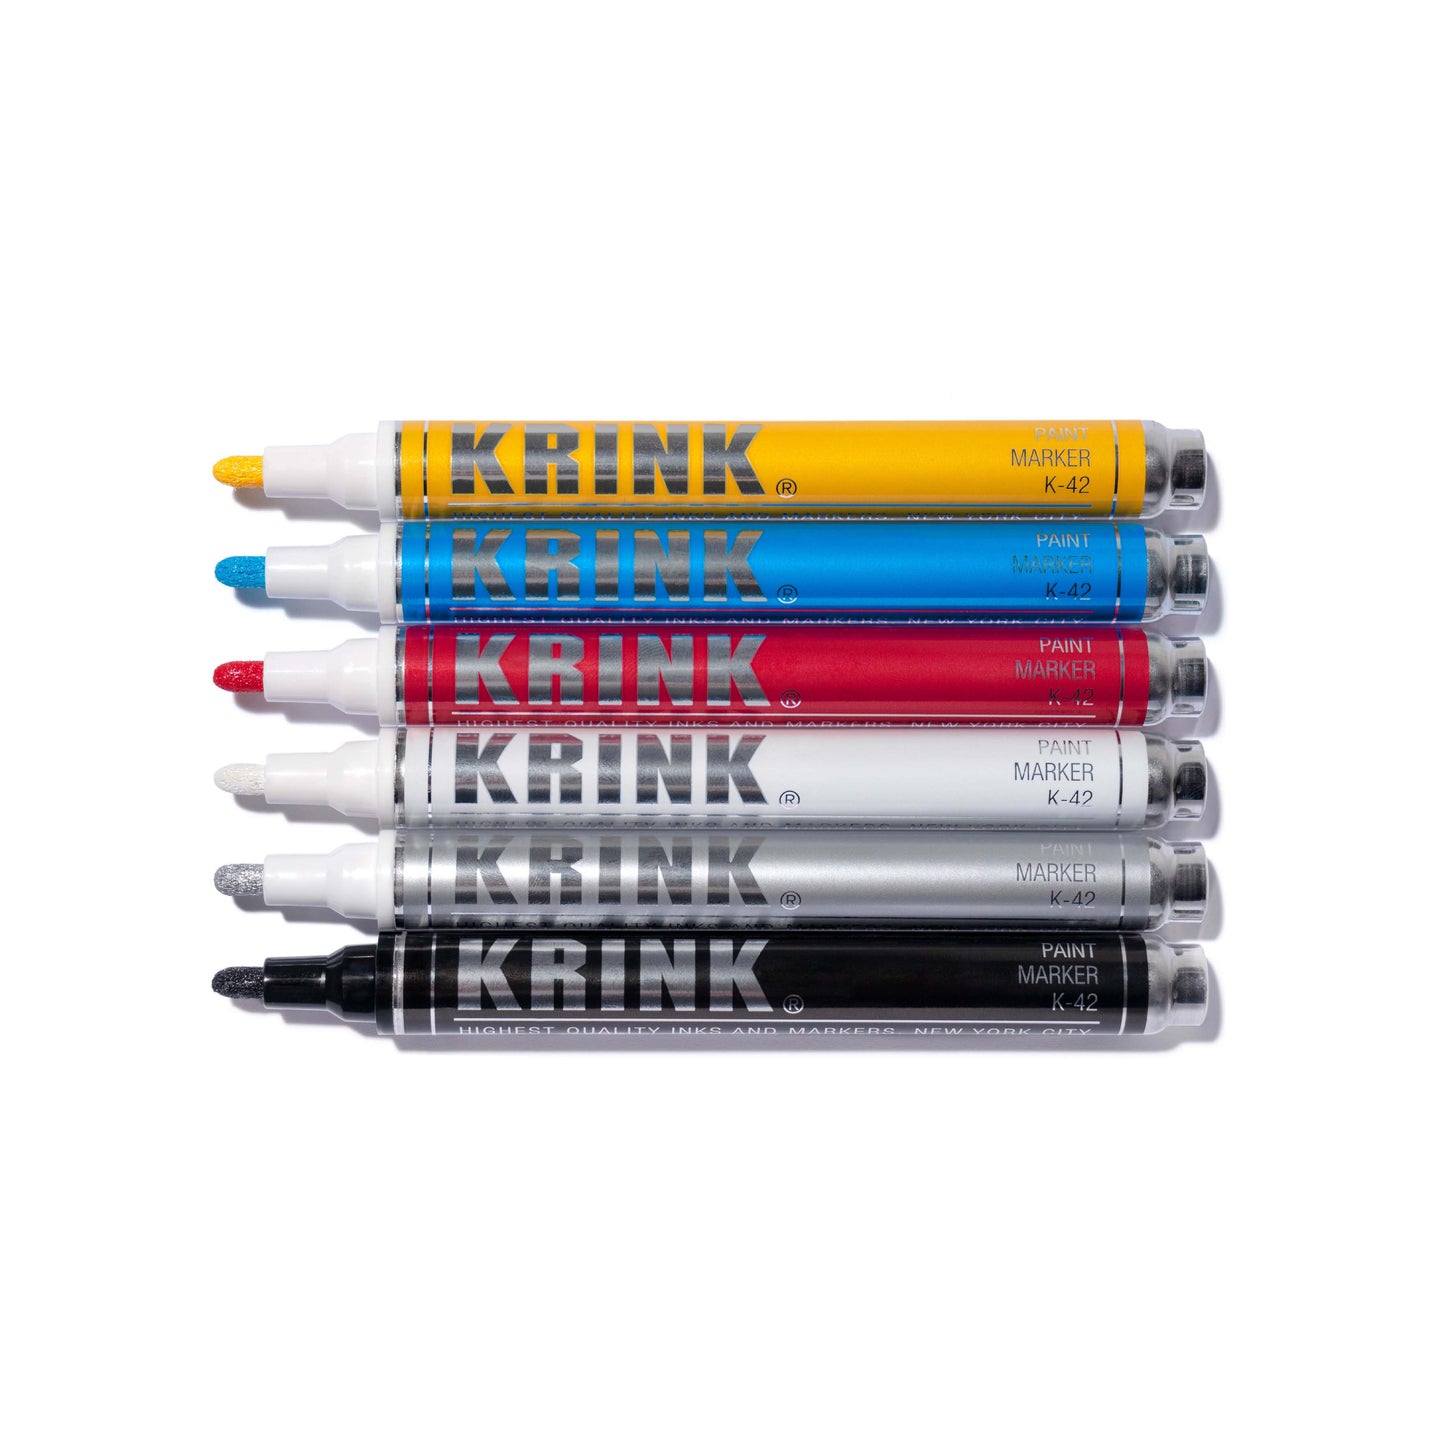 KRINK / K-42 6 Pack